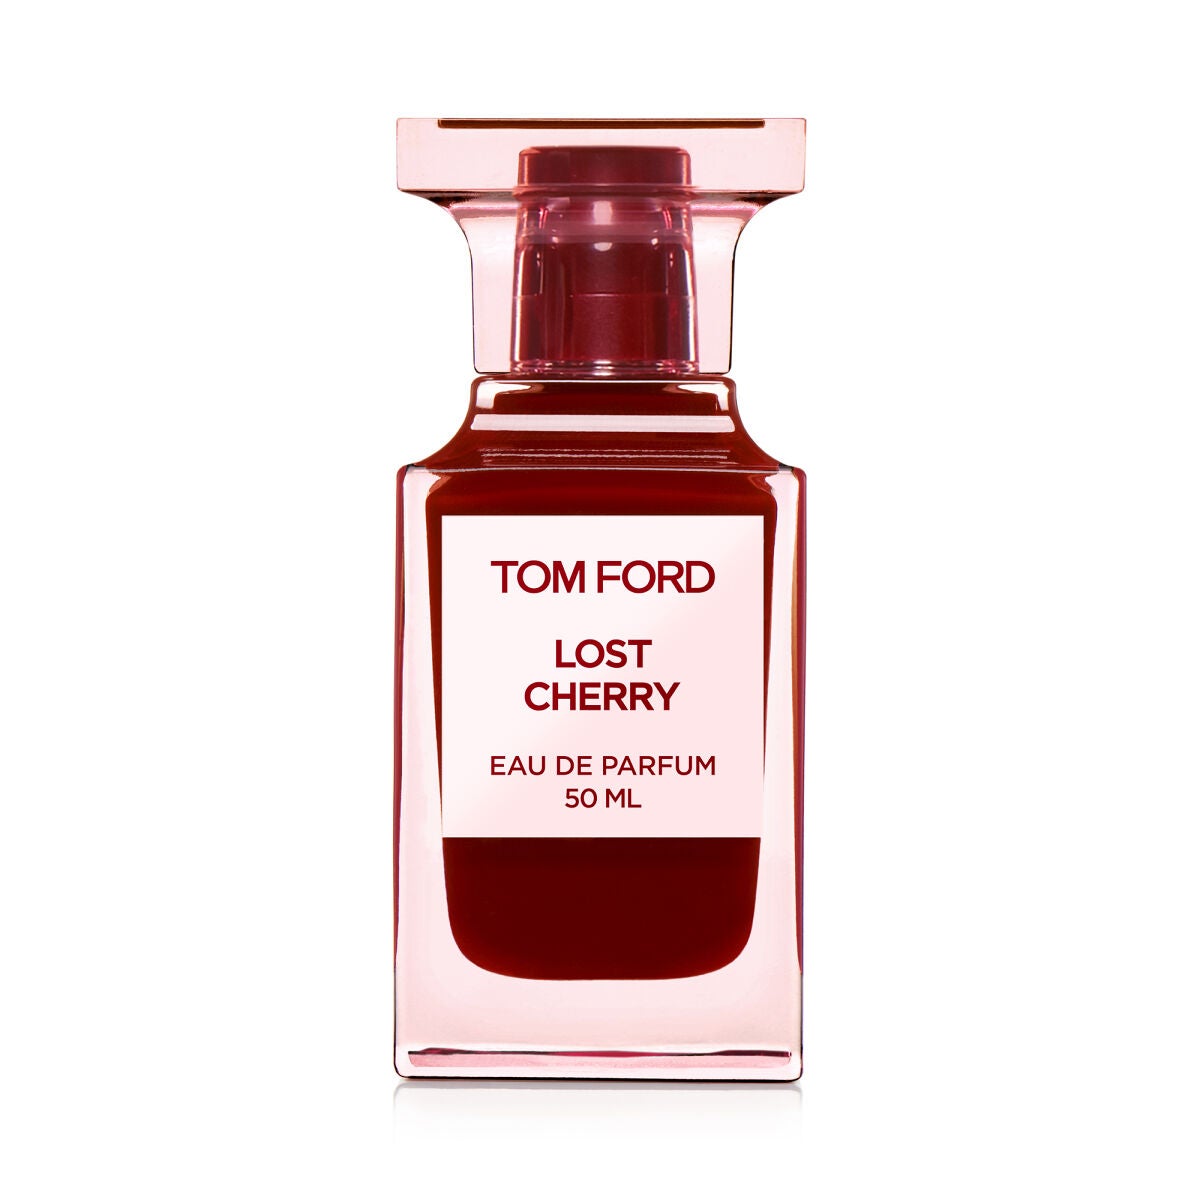 TOM FORD BEAUTY(トムフォードビューティ)の香水33選 | 人気商品から